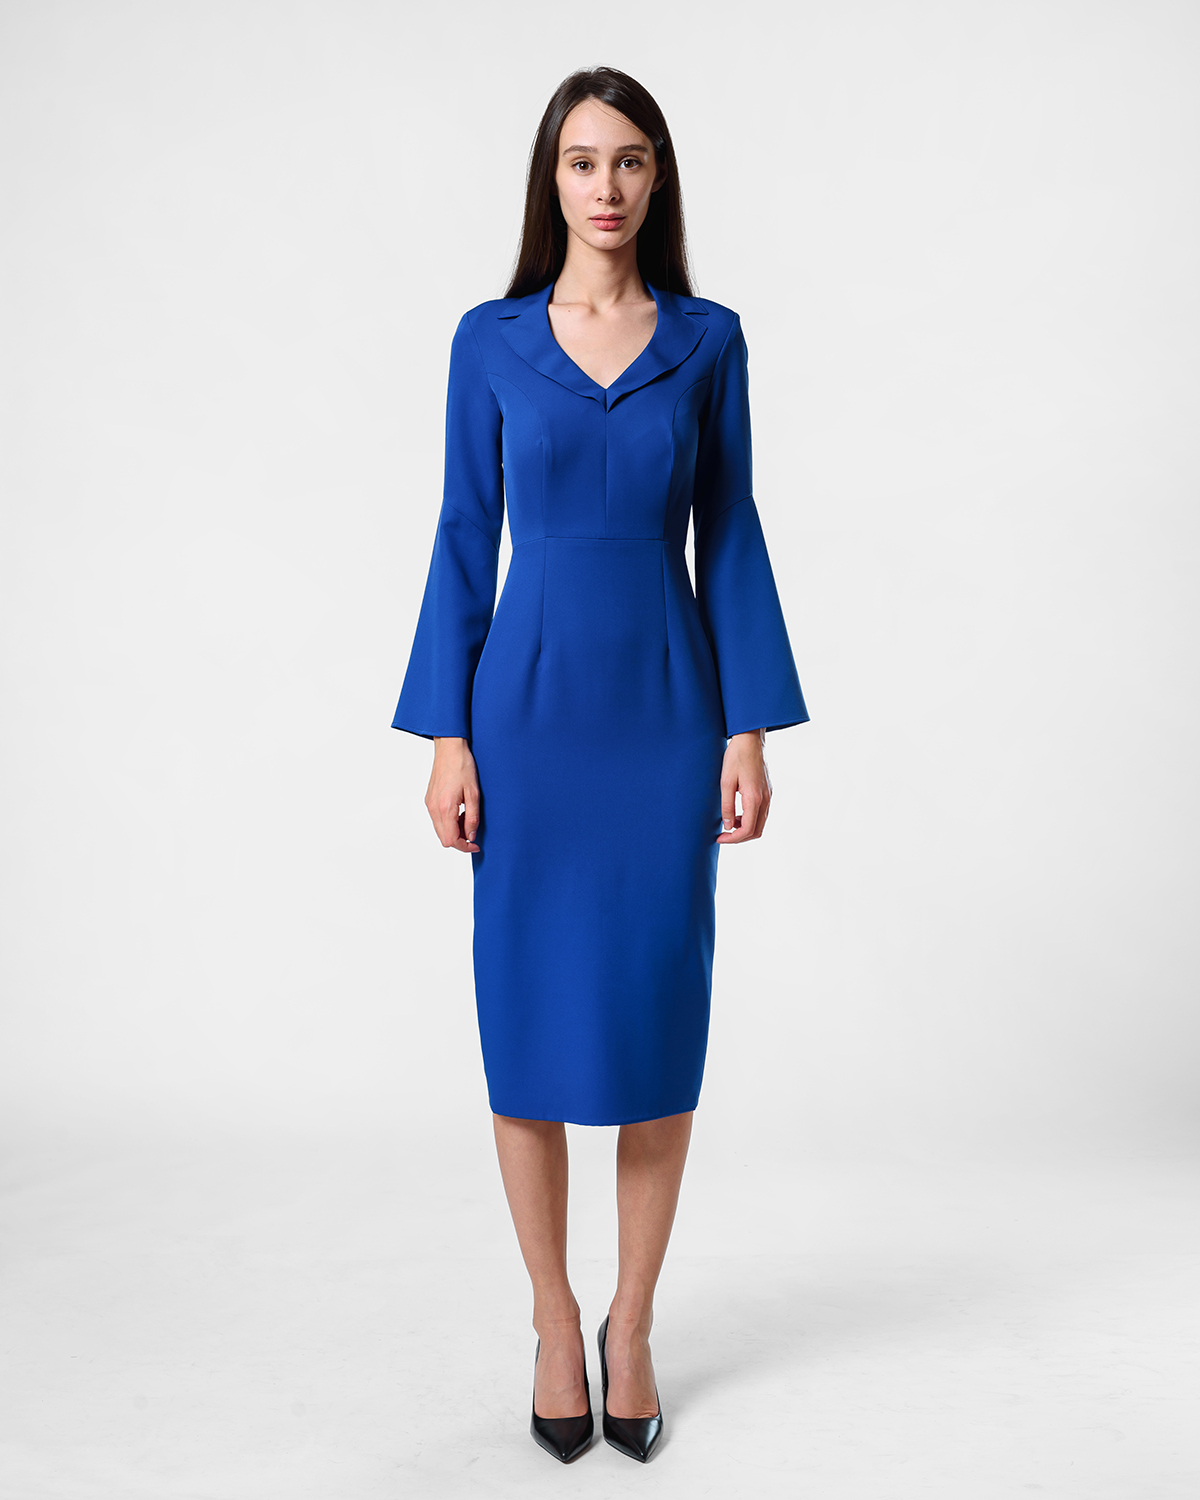 Poslovna plava haljina sa kragnom